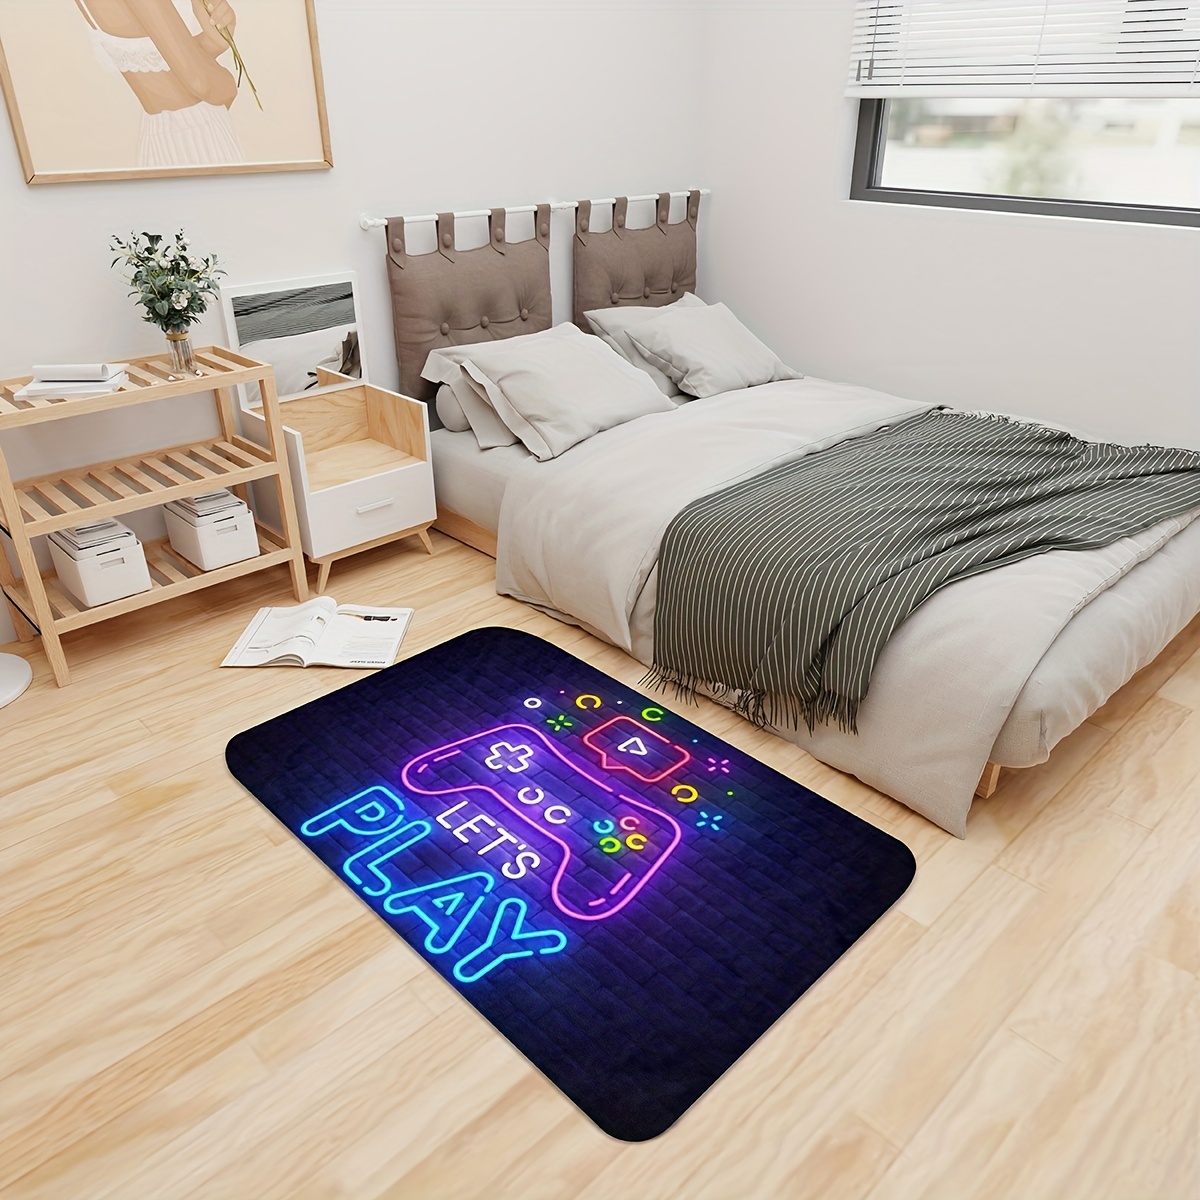 Neon Video Game Floor Mat Large Game Area Rug Gamer Carpet Game Printed  Floor Mat For Living Room Mat Bedroom Mat - Temu